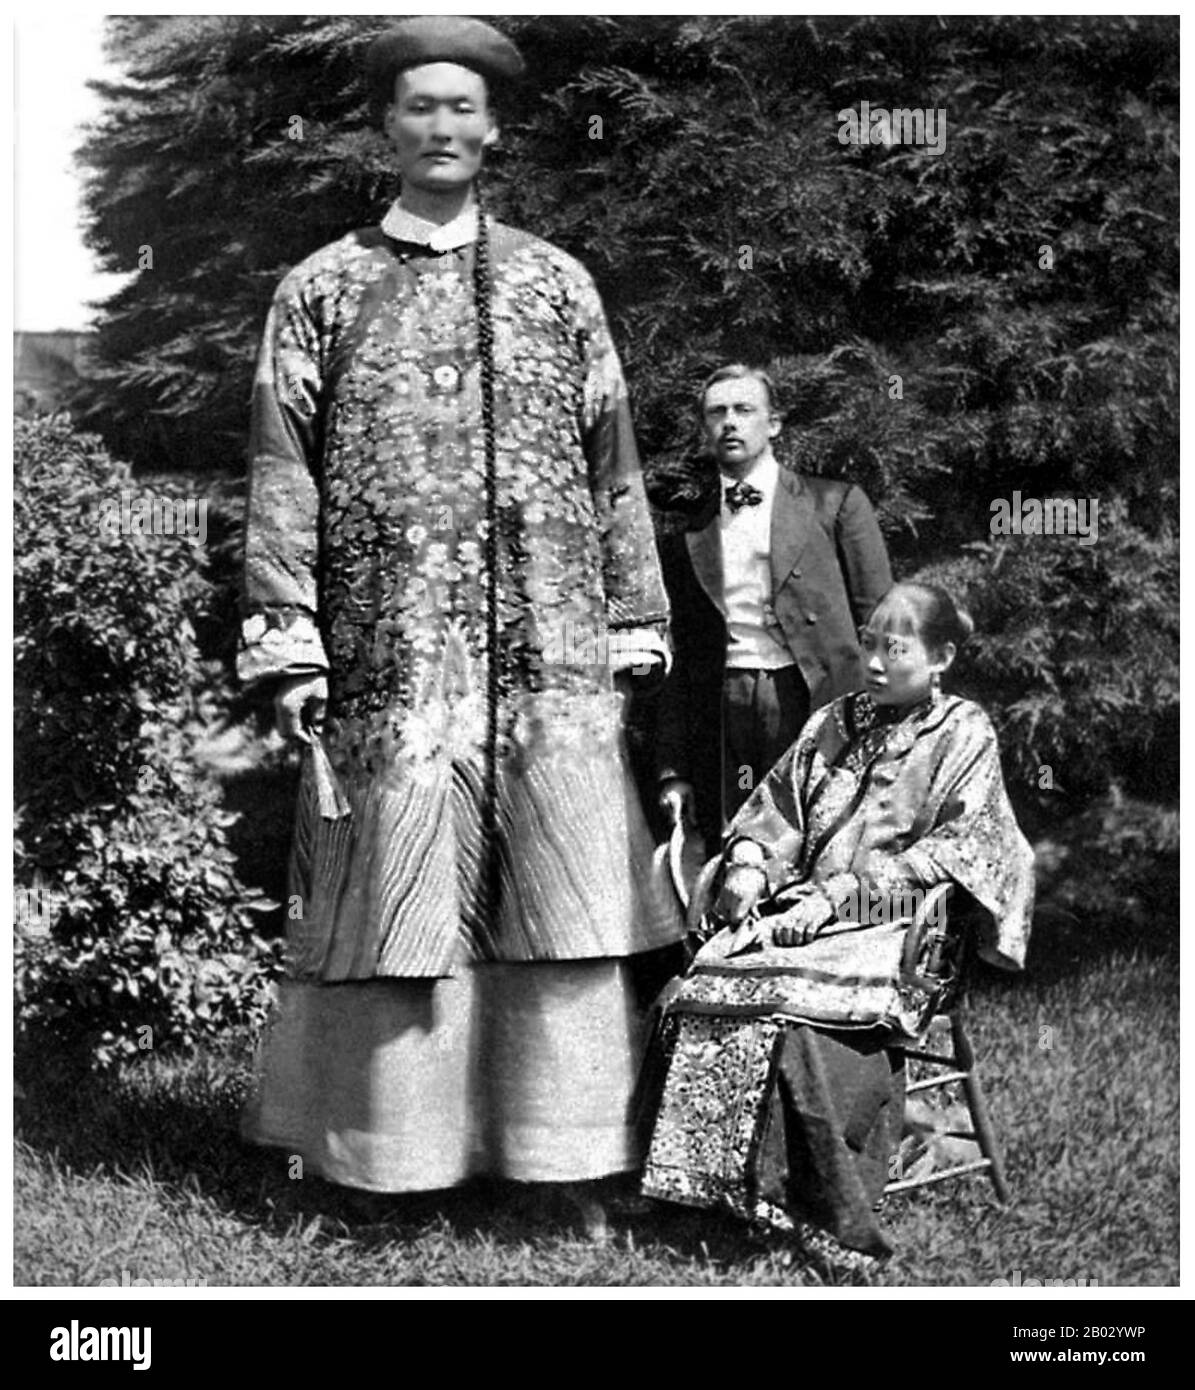 Zhan Shichai (1841 - 5 novembre 1893) était un géant chinois qui a visité le monde comme 'Chang the Chinese Giant' au XIXe siècle. Son nom de scène était 'Chang Woo Gow'. Zhan est né à Fuzhou, province de Fujian dans les années 1840, bien que les rapports de l'année varient de 1841 à 1847. Sa hauteur était de plus de 2,4 m (8 pieds), mais il n'y a pas de dossiers faisant autorité. Il a quitté la Chine en 1865 pour se rendre à Londres où il est apparu sur scène, voyager plus tard en Europe, et aux États-Unis et en Australie comme 'Chang the Chinese Giant'. Zhan a reçu une bonne éducation dans divers pays, et a développé un bon und Banque D'Images